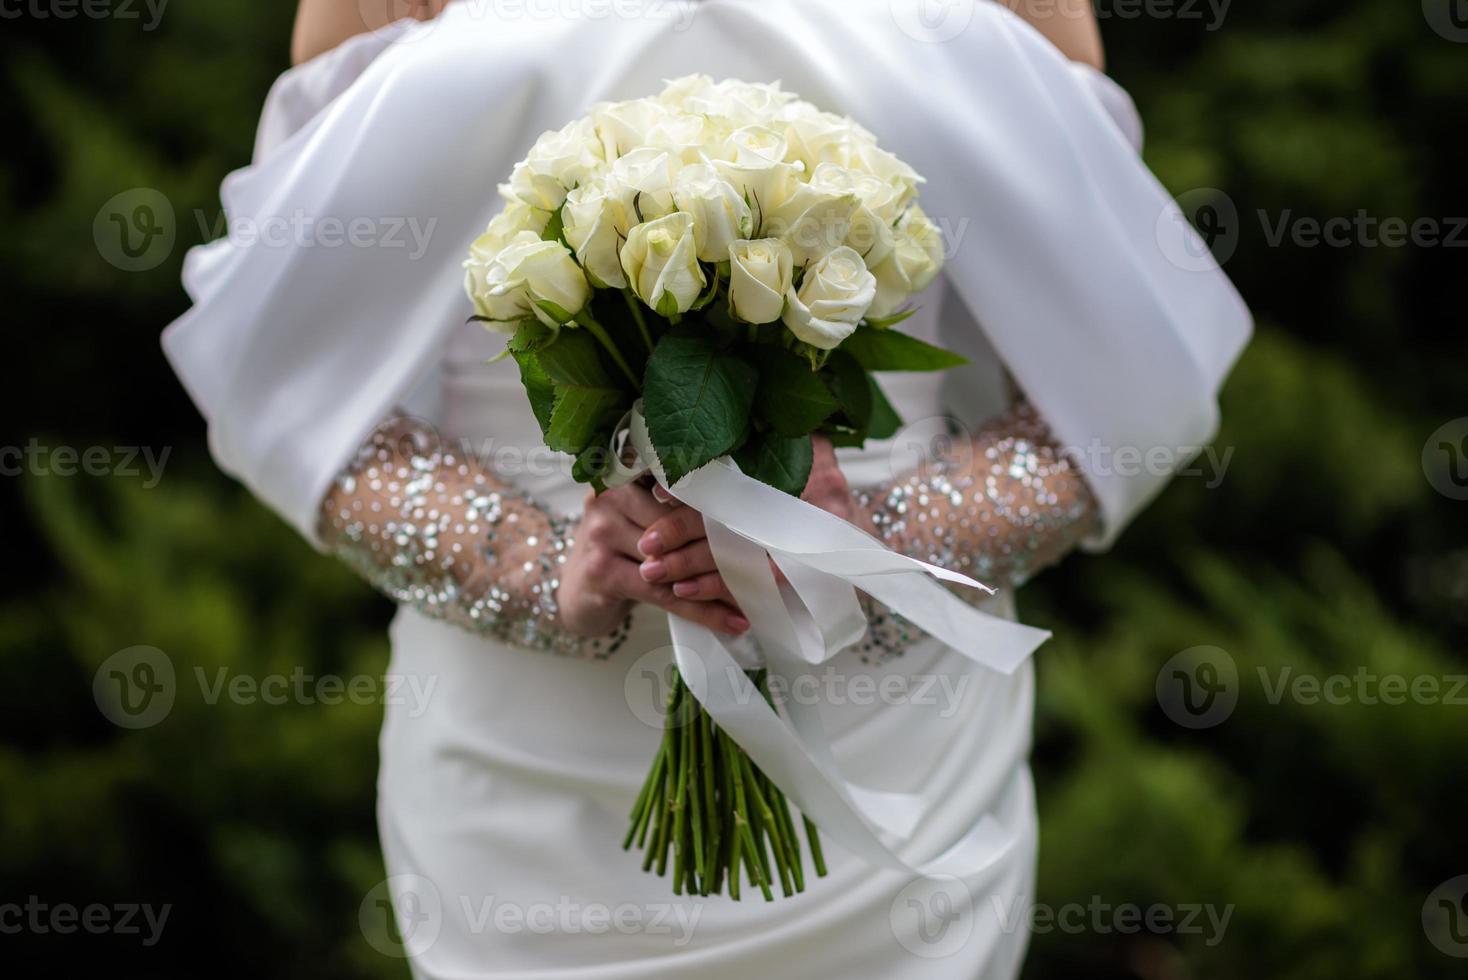 la novia con un vestido de novia blanco sostiene un ramo de flores blancas: peonías, rosas. boda. la novia y el novio. delicado ramo de bienvenida. hermosa decoración de bodas con hojas foto